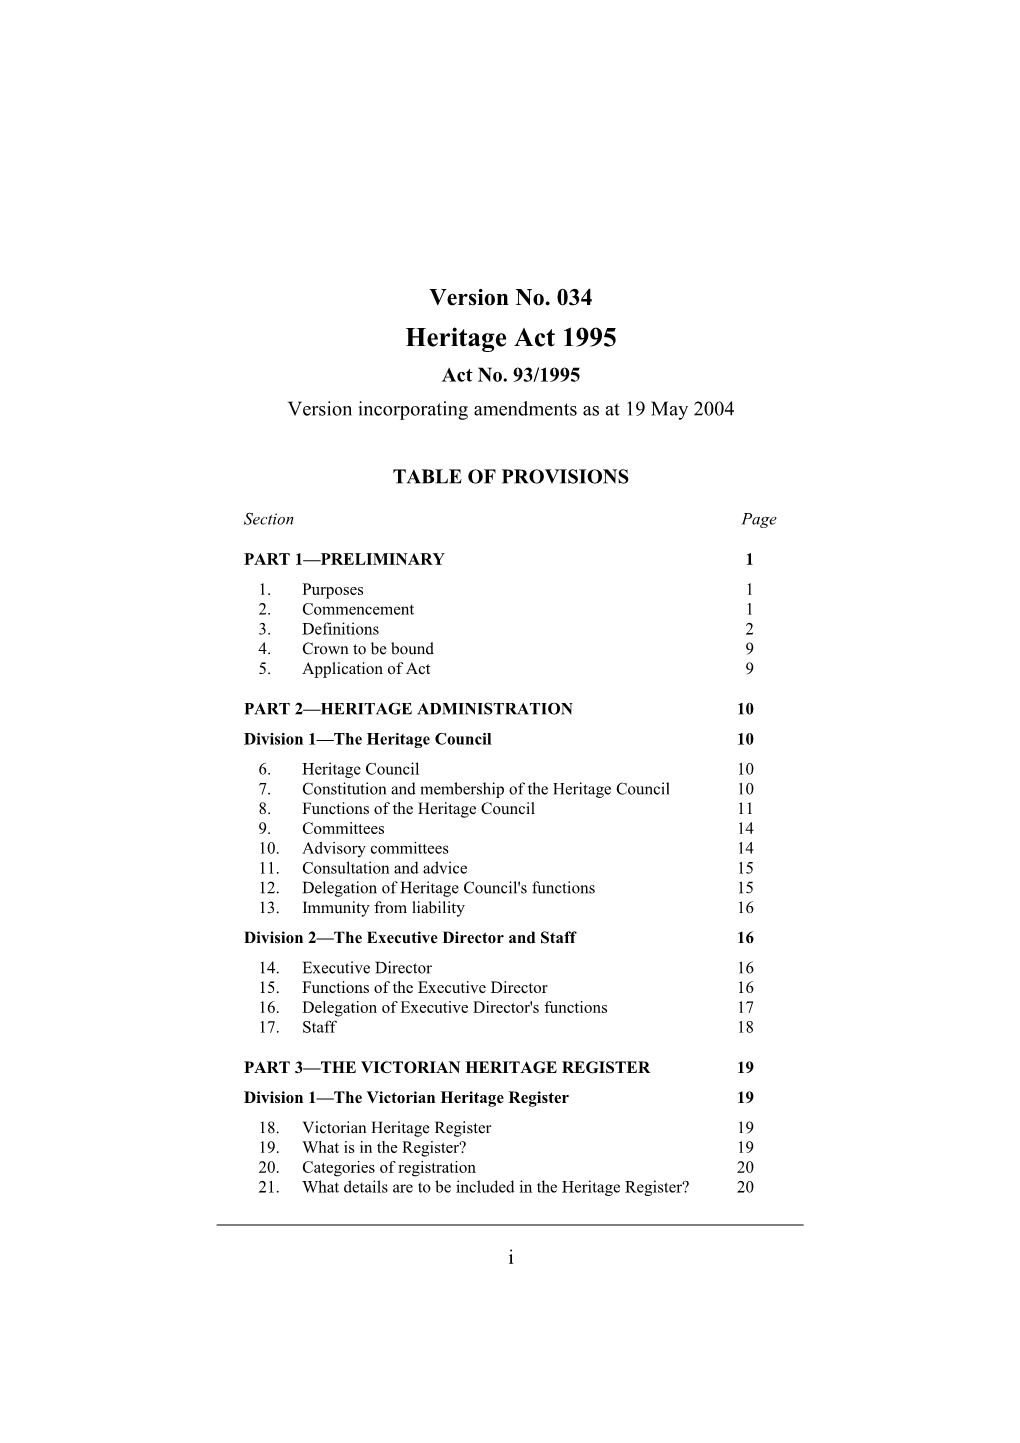 Version Incorporating Amendments As at 19 May 2004